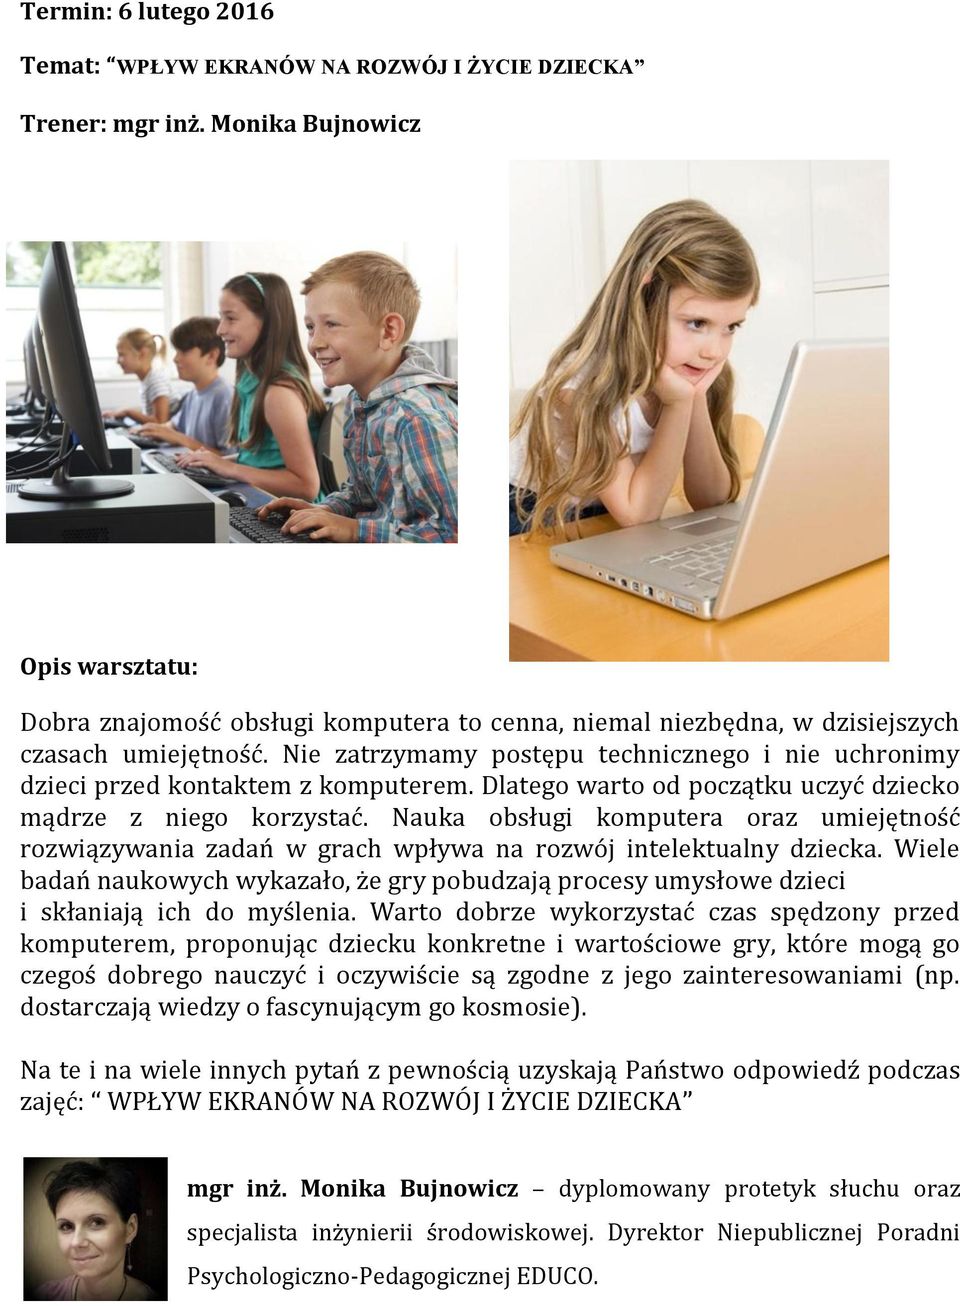 Nauka obsługi komputera oraz umiejętność rozwiązywania zadań w grach wpływa na rozwój intelektualny dziecka.